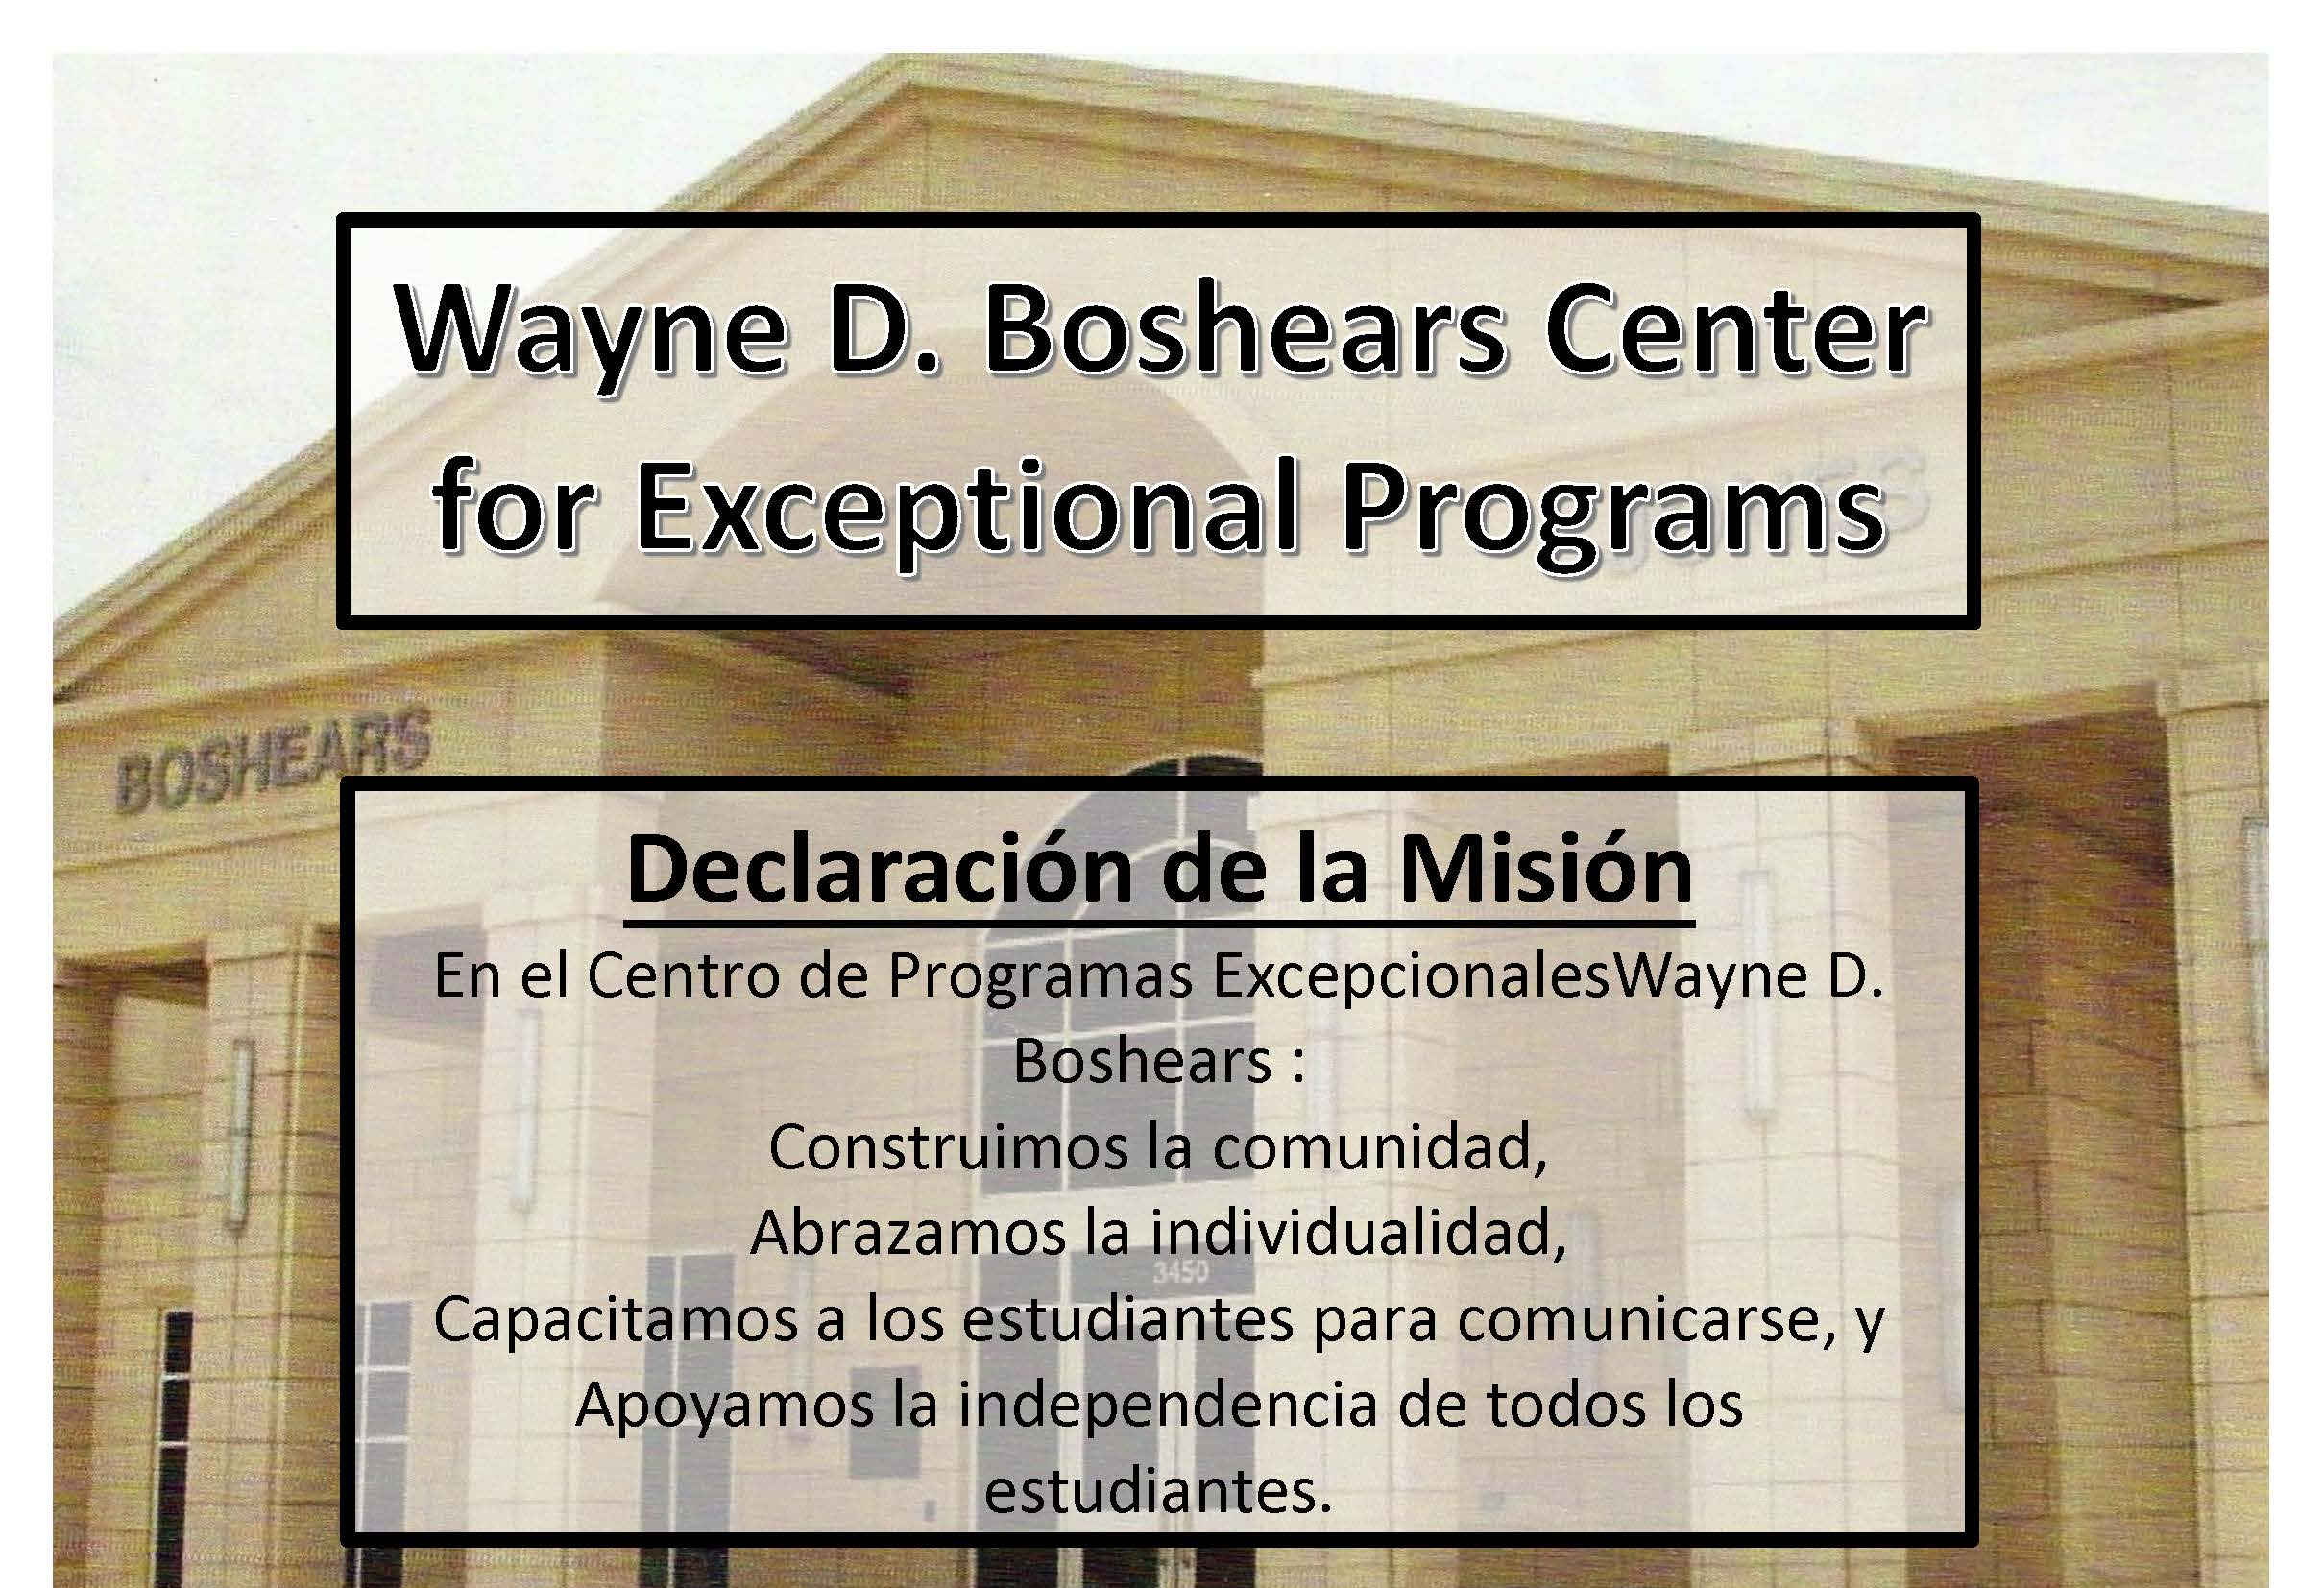 Declaración de la Misión En el Wayne D. Boshears Centro de Programas Excepcionales: construimos comunidad, abrazamos la individualidad, capacitamos a los esudiantes para comunicarse, y apoyamos la independencia de todos los esudiantes.